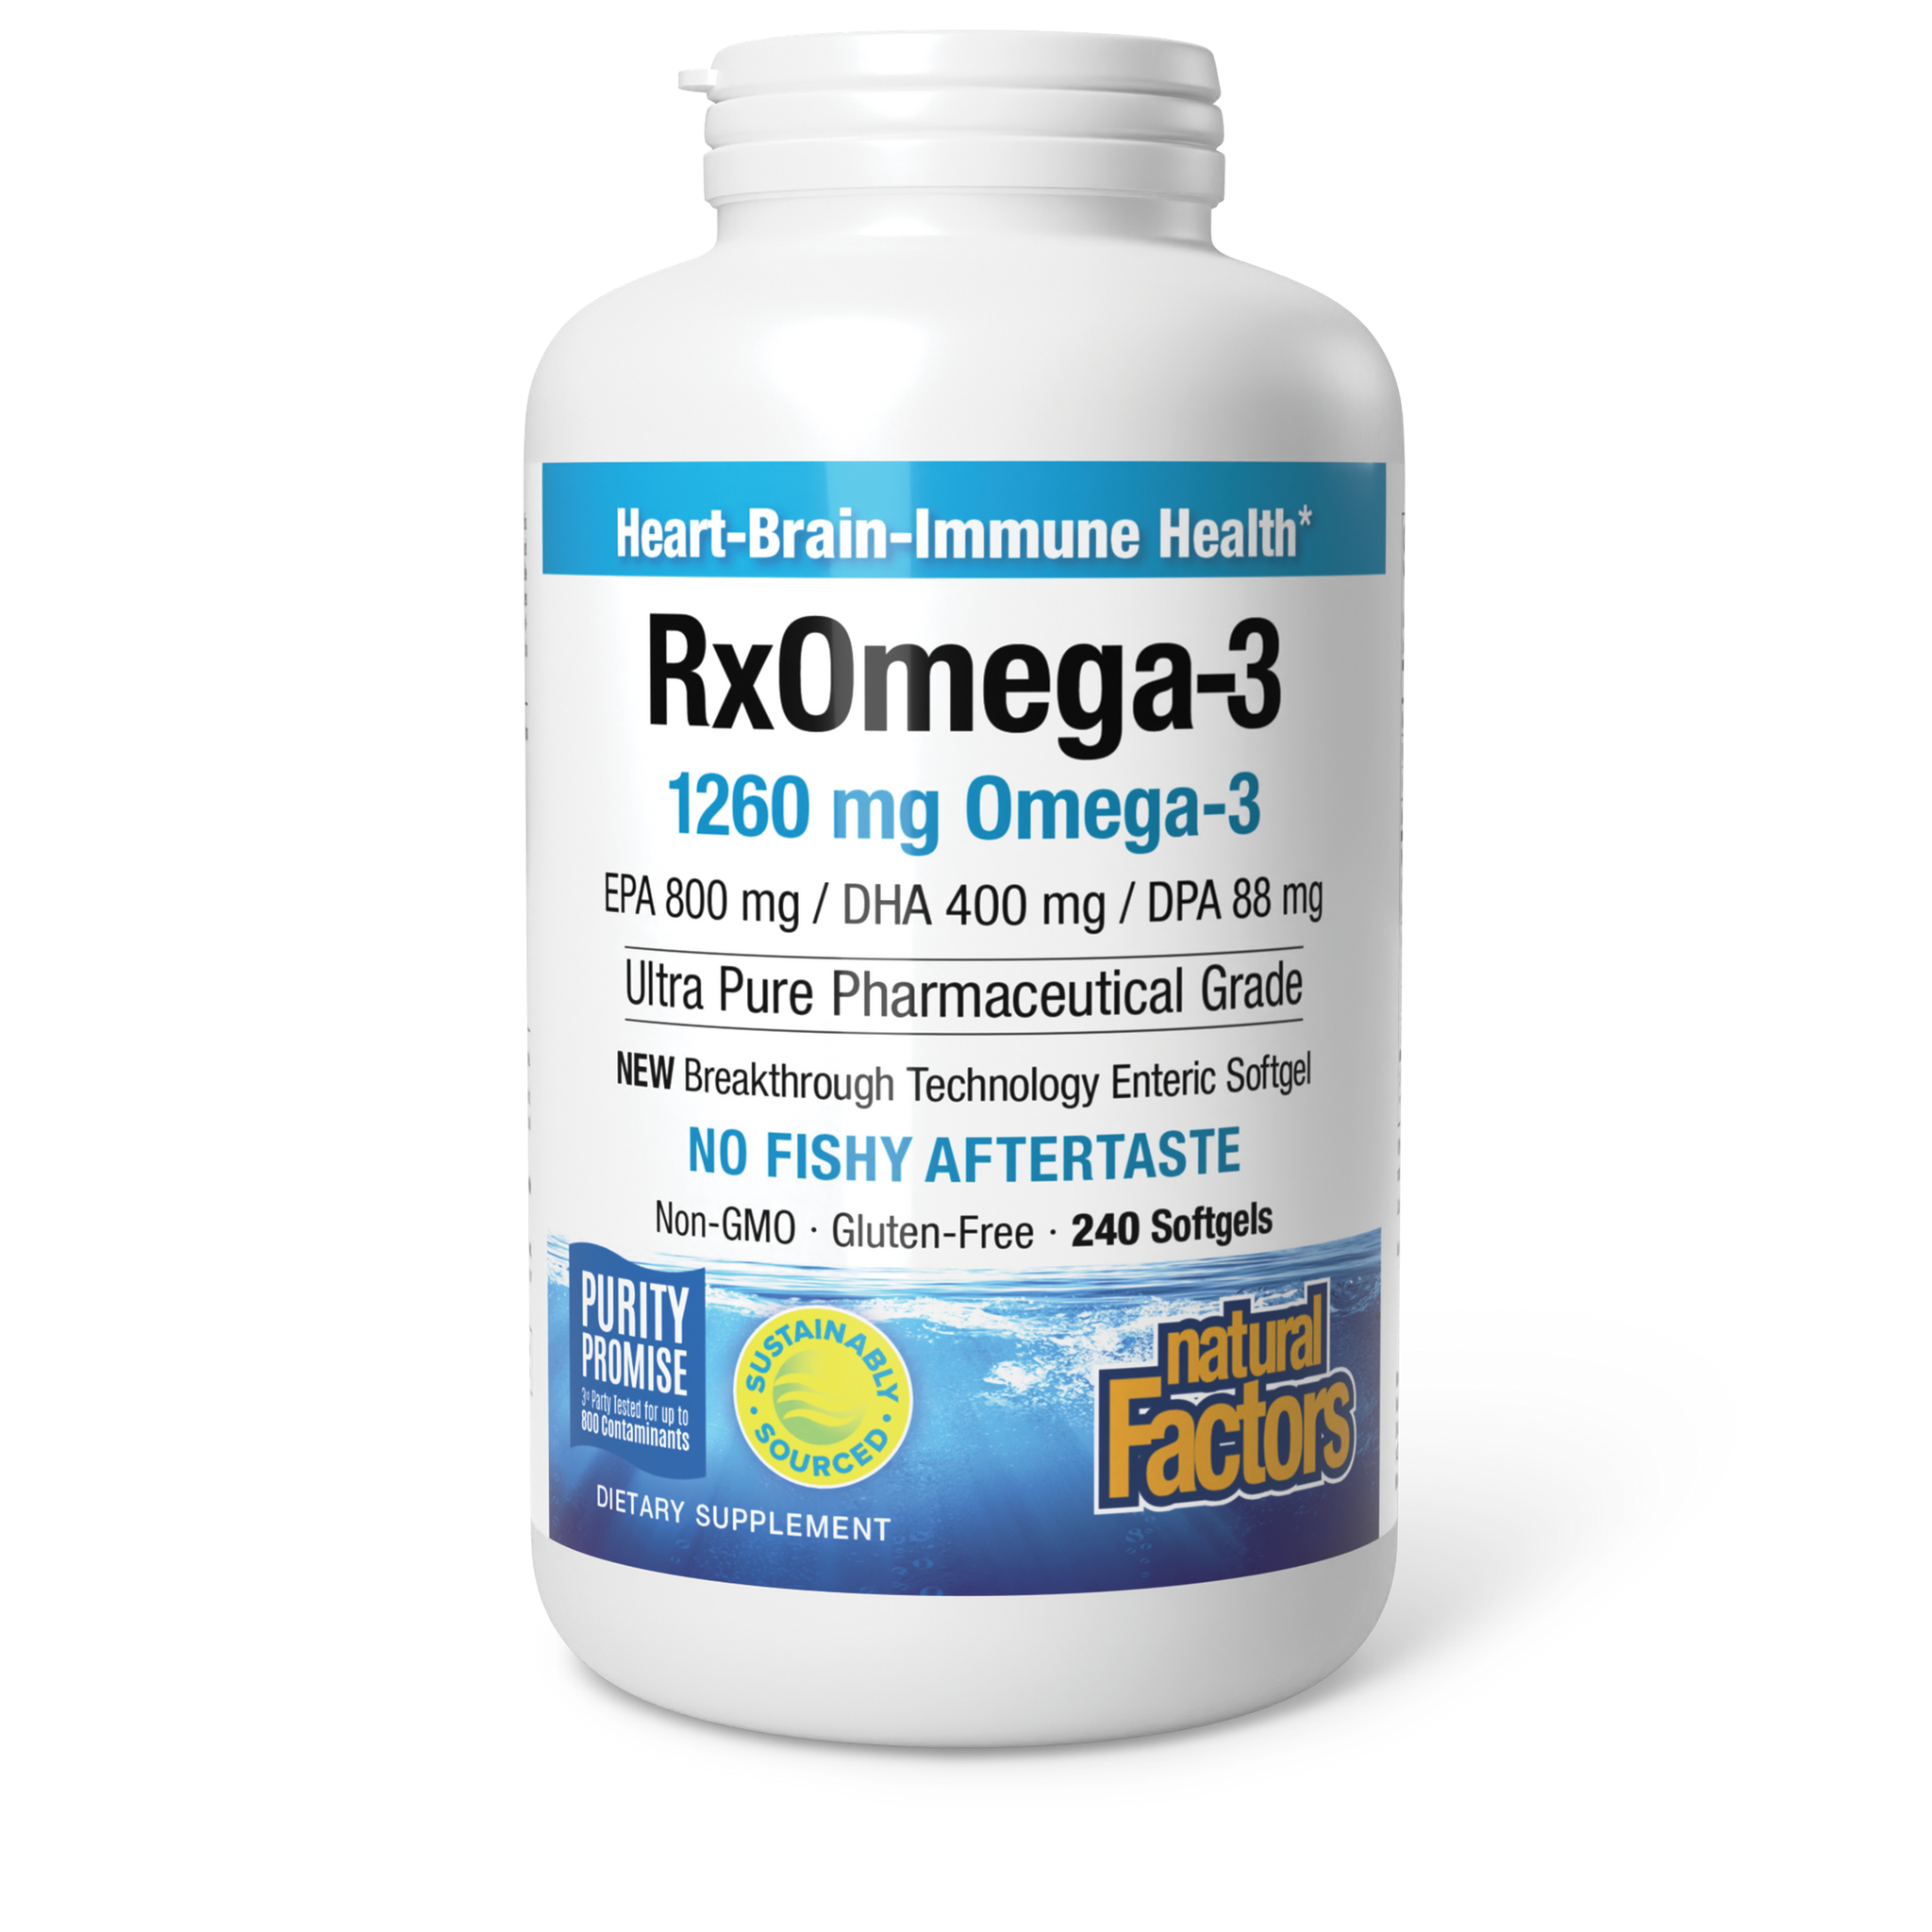 RxOmega-3 1260 mg